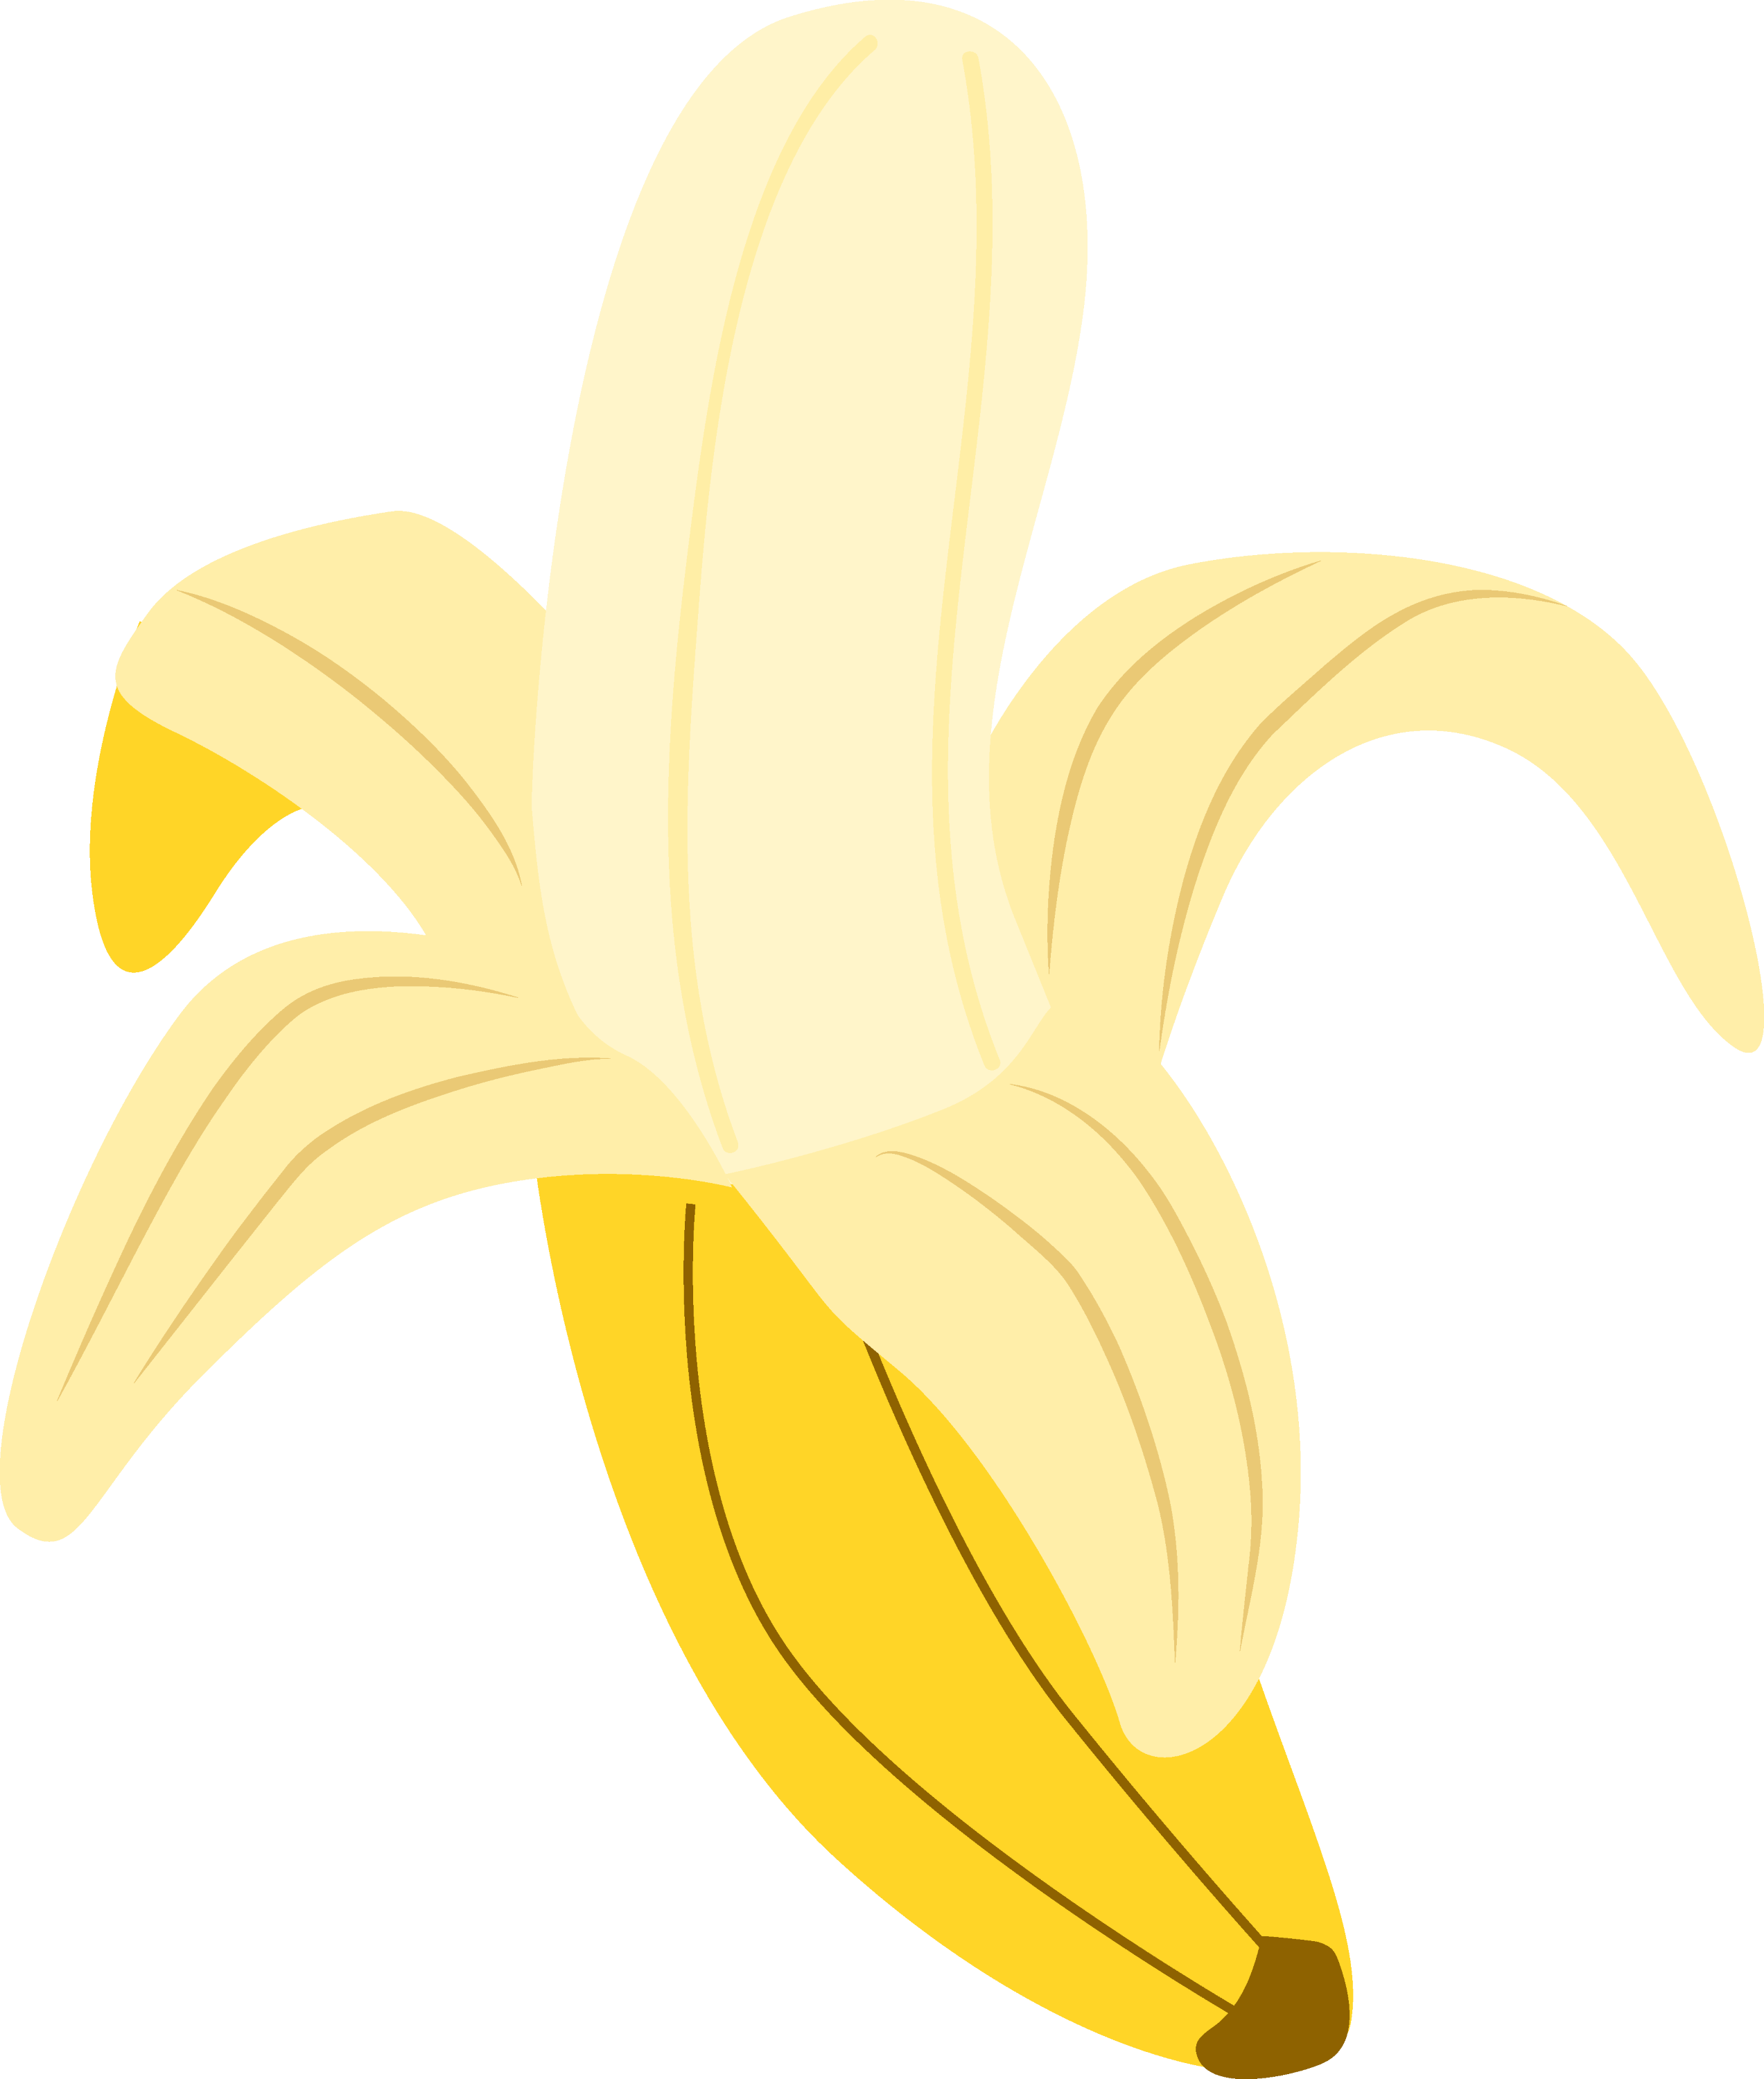 clipart banana - photo #26